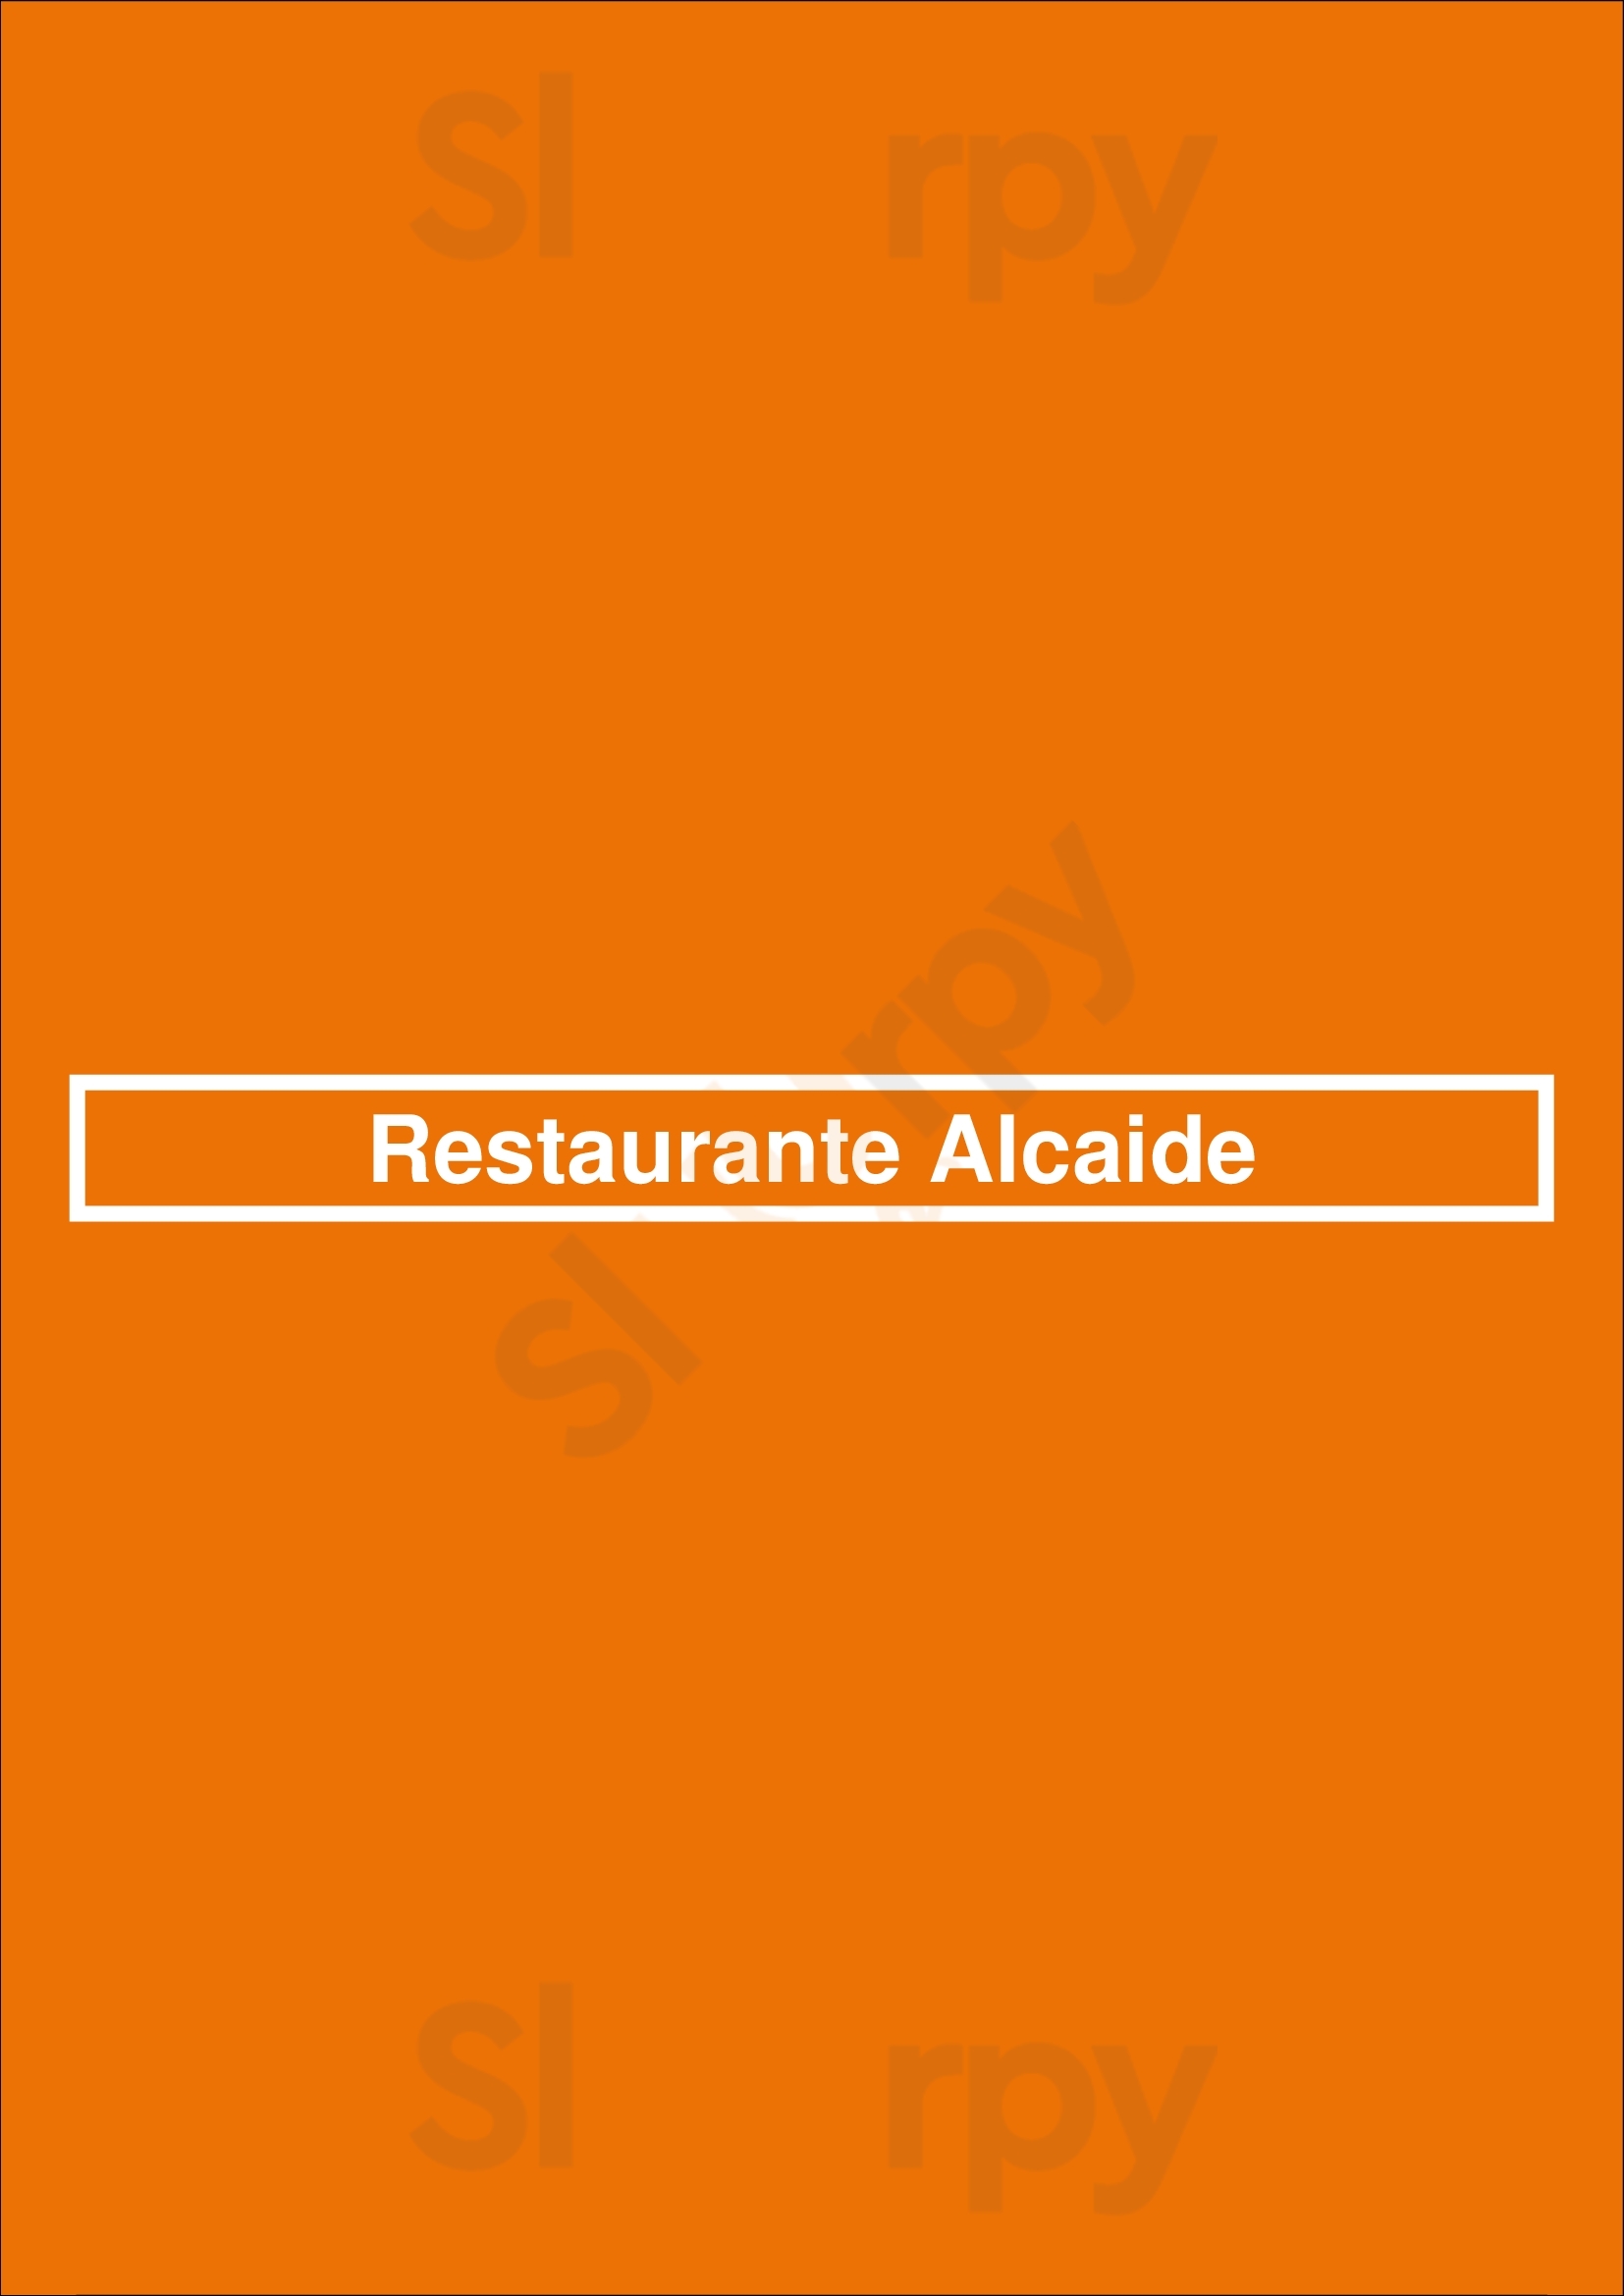 Restaurante Alcaide Porto Menu - 1